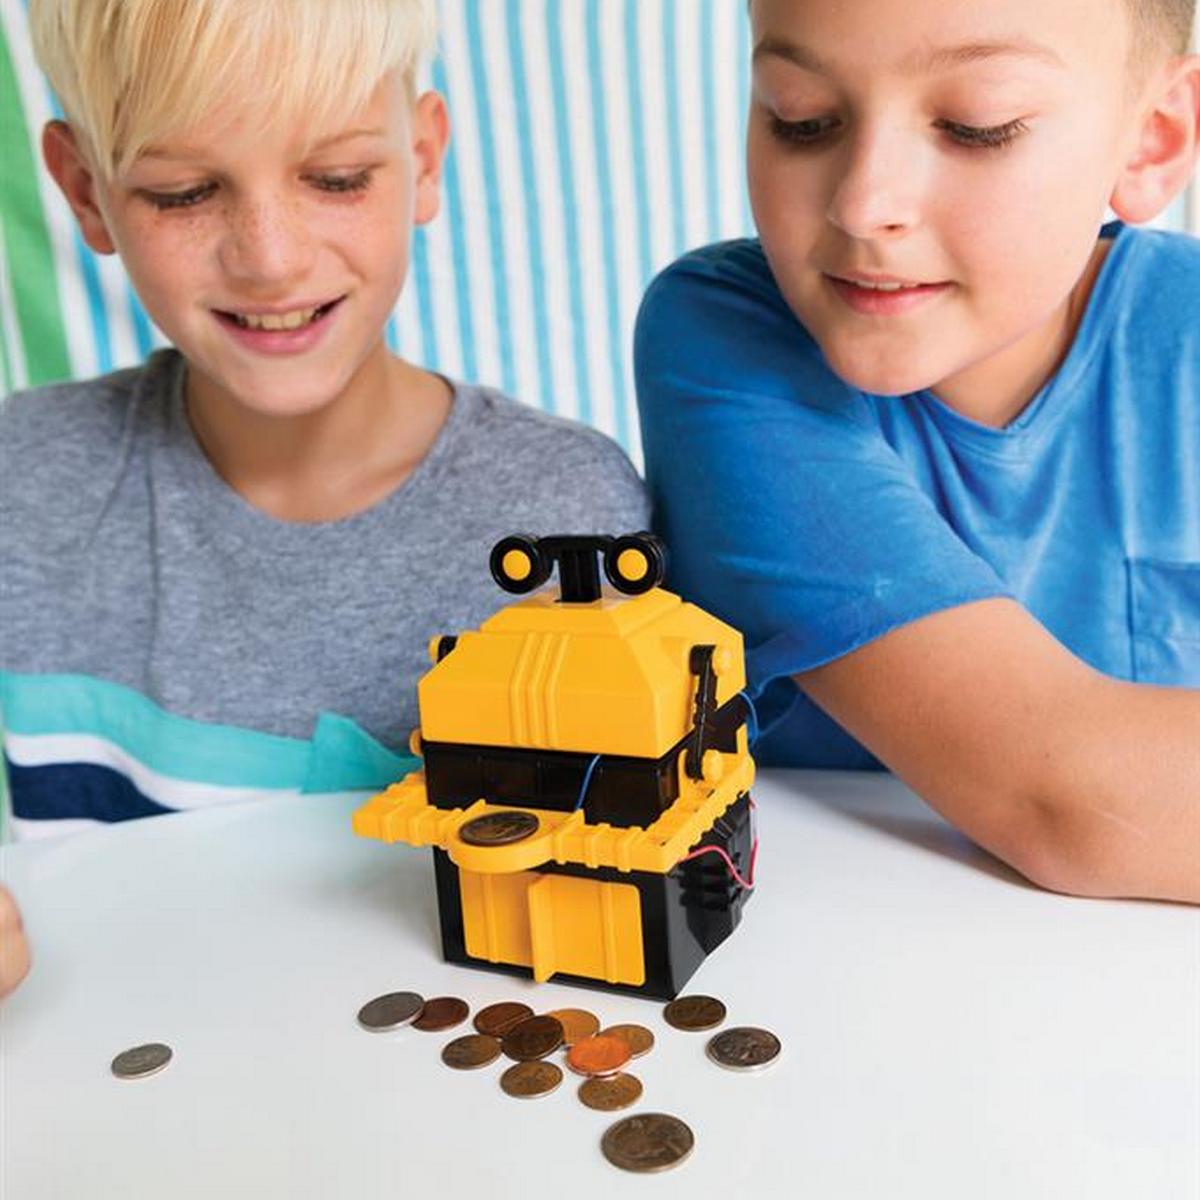 4M kidsrobotix robot tirelire une idee cadeau chez ugo et lea (6)